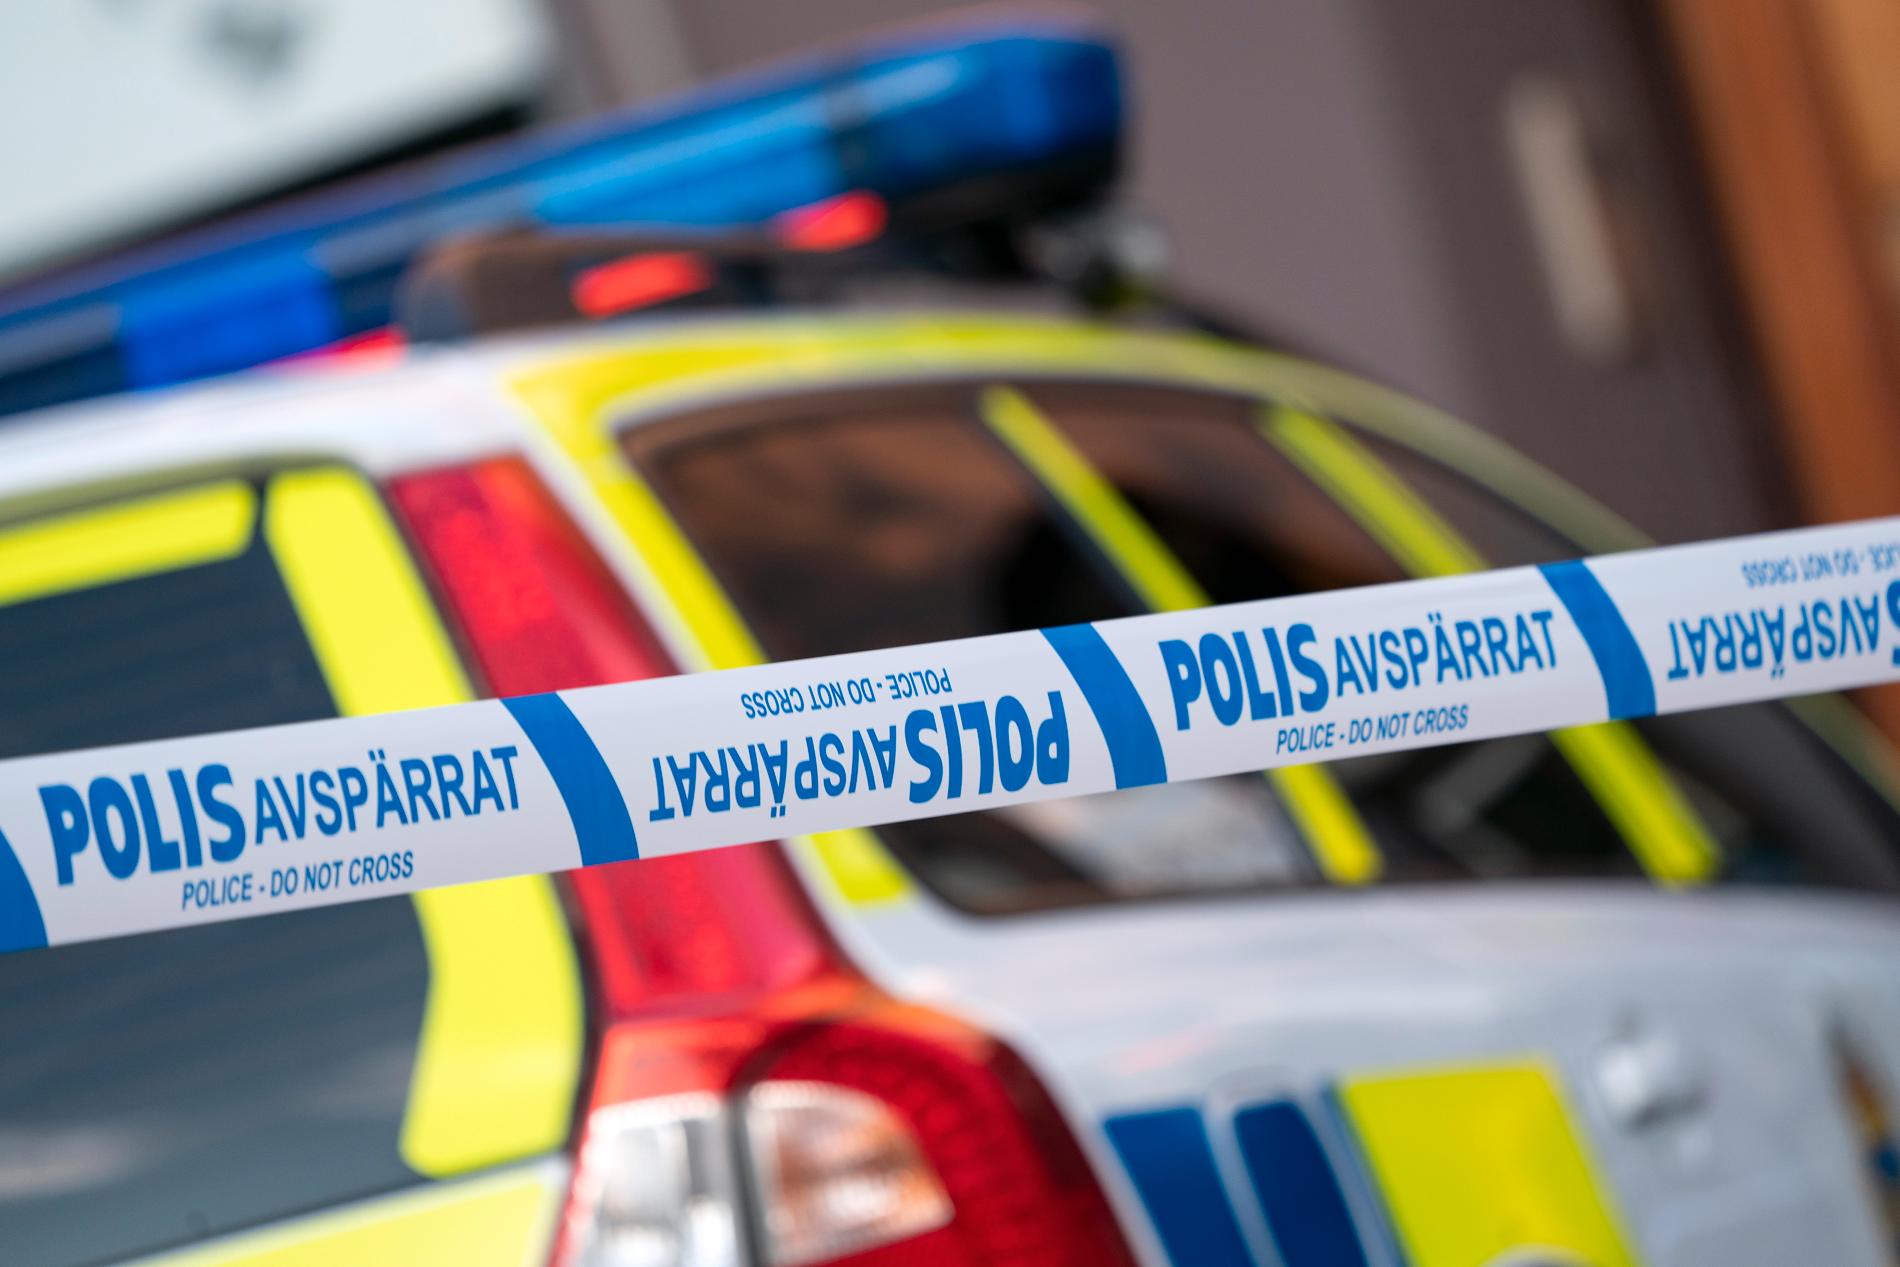 Vid 23-tiden på torsdagskvällen larmades polisen om ett mord, alternativt dråp, i Trelleborg. Arkivbild.